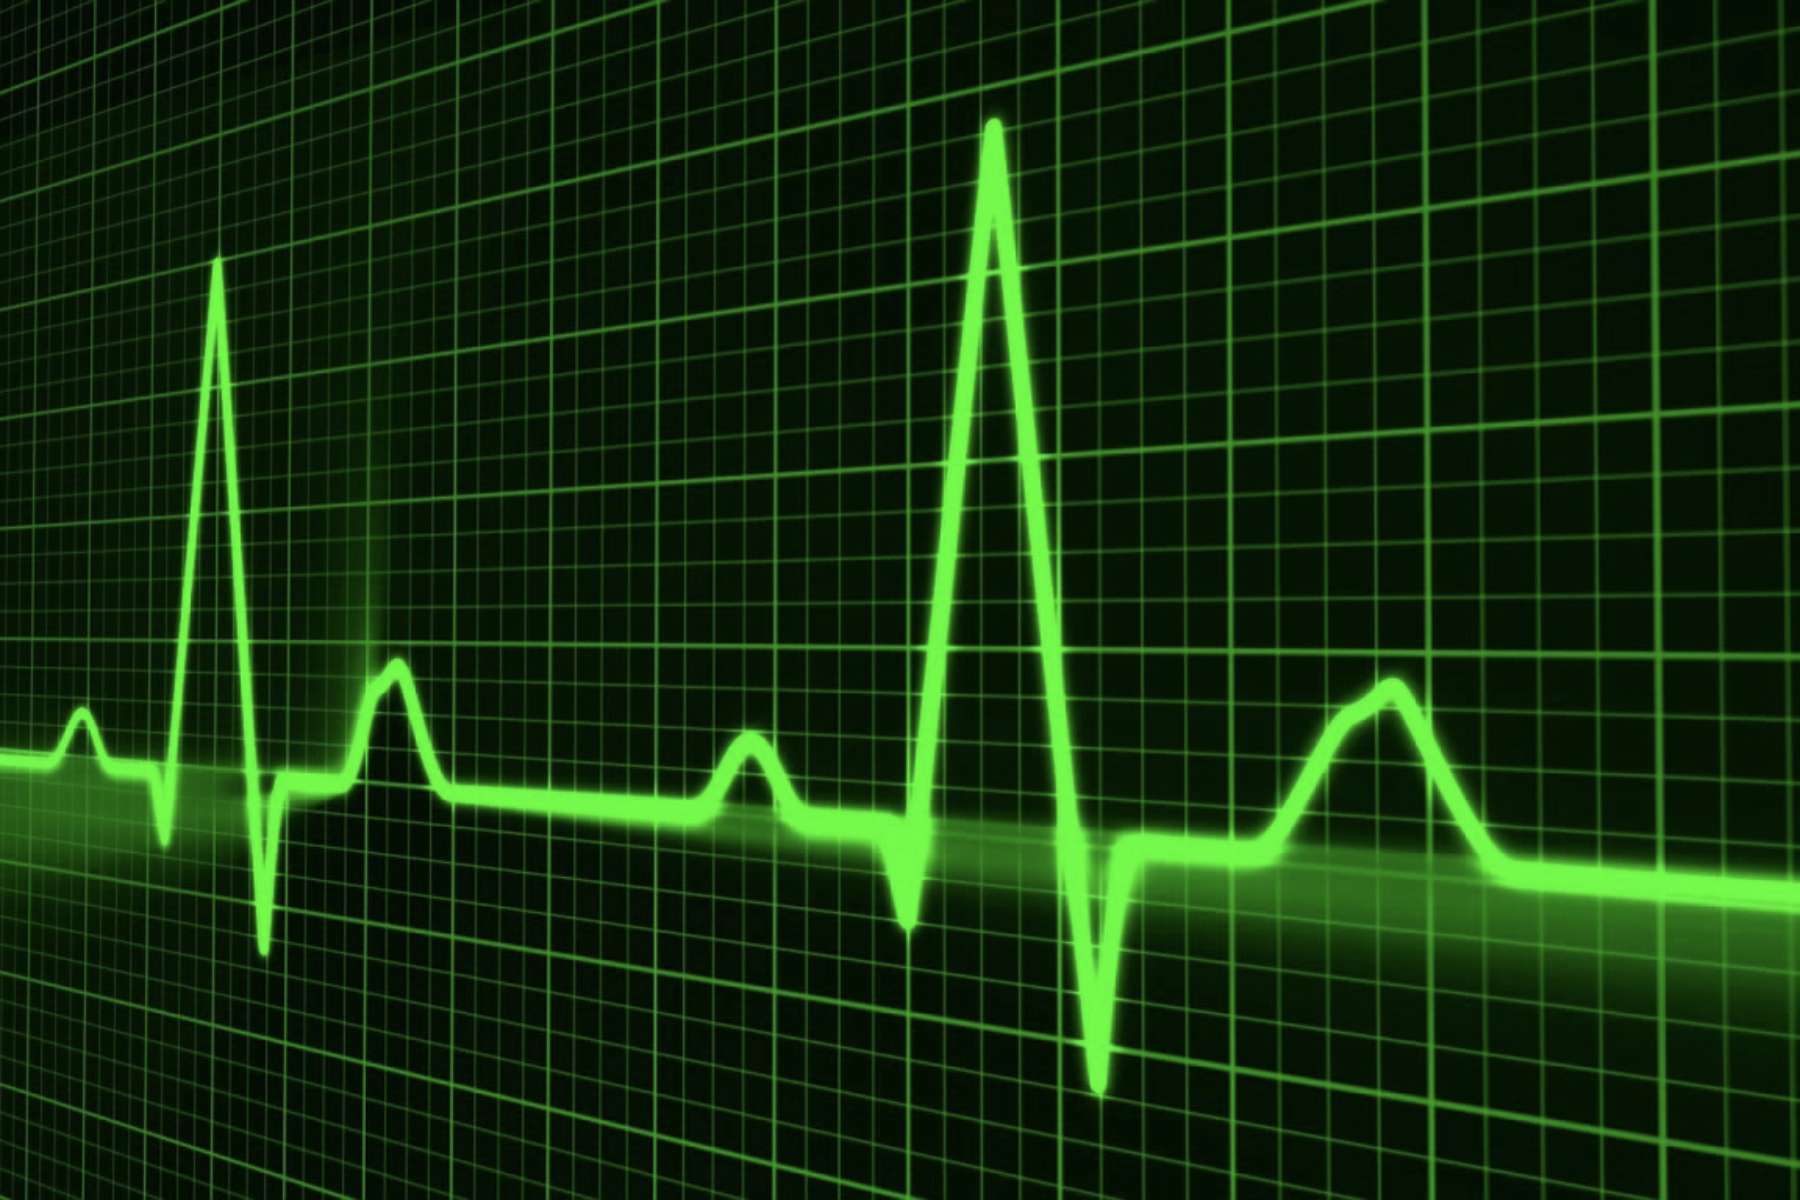 Καρδιακοί παλμοί: Πώς μπορείτε να μετρήσετε τους καρδιακούς παλμούς σας;